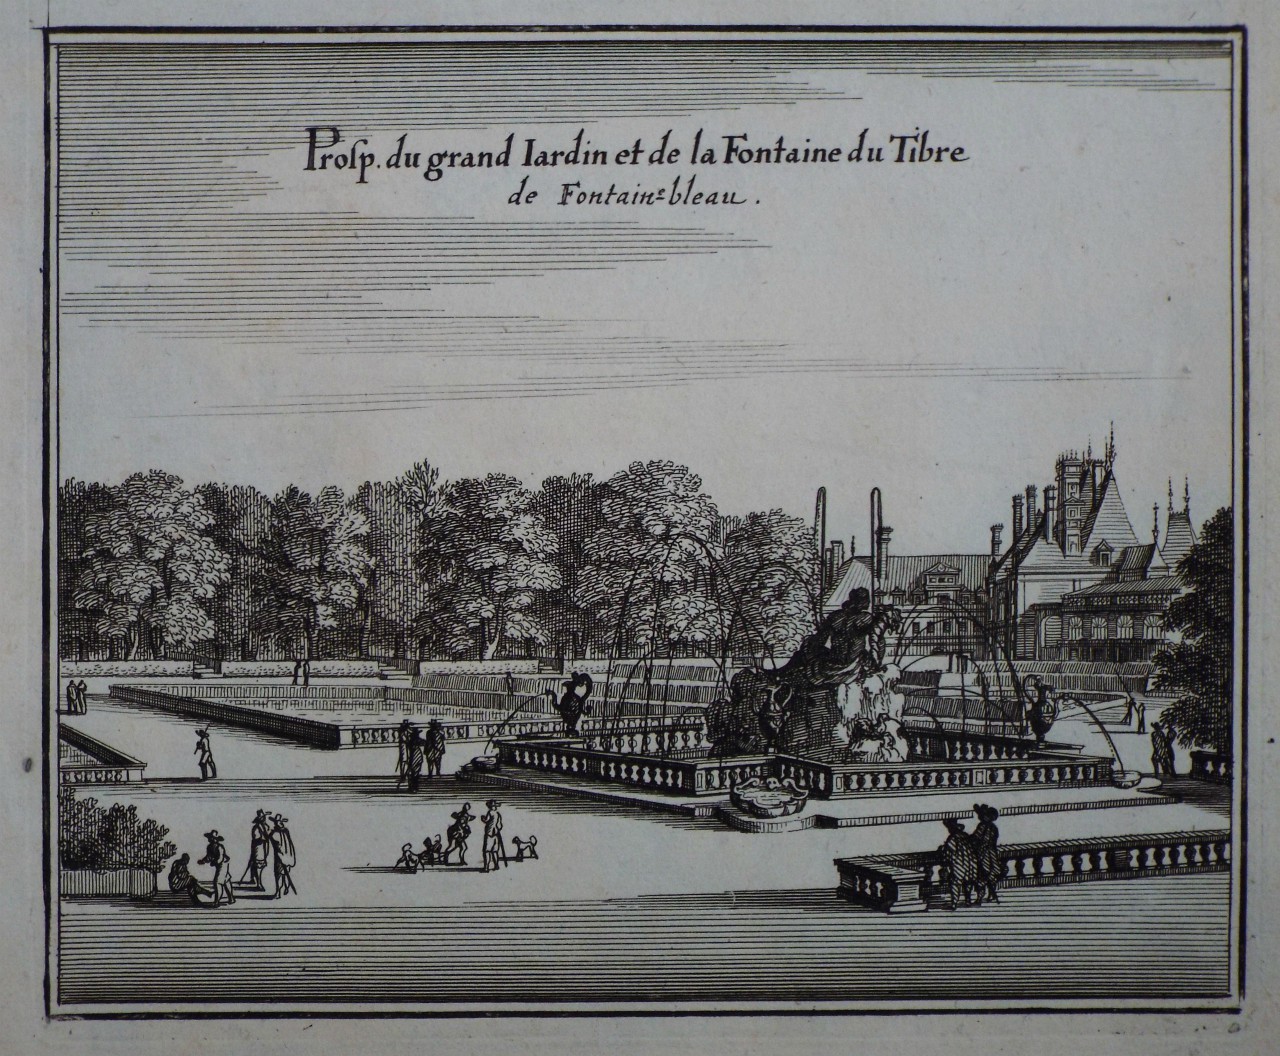 Print - Prosp. du grand Jardin et de la Fontaine du Tibre de Fontaine-bleau.